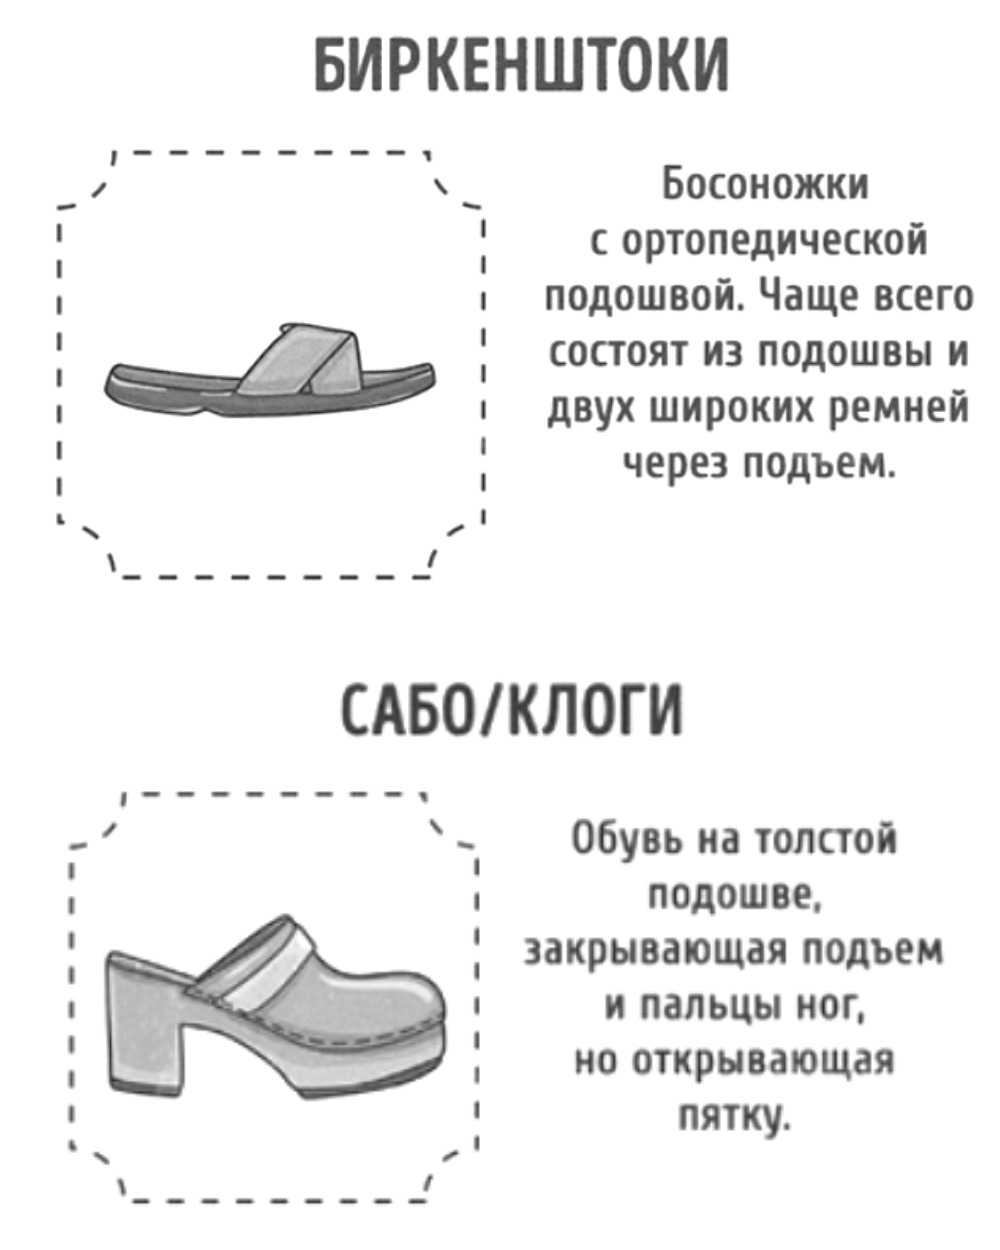 разновидность женской обуви с фото